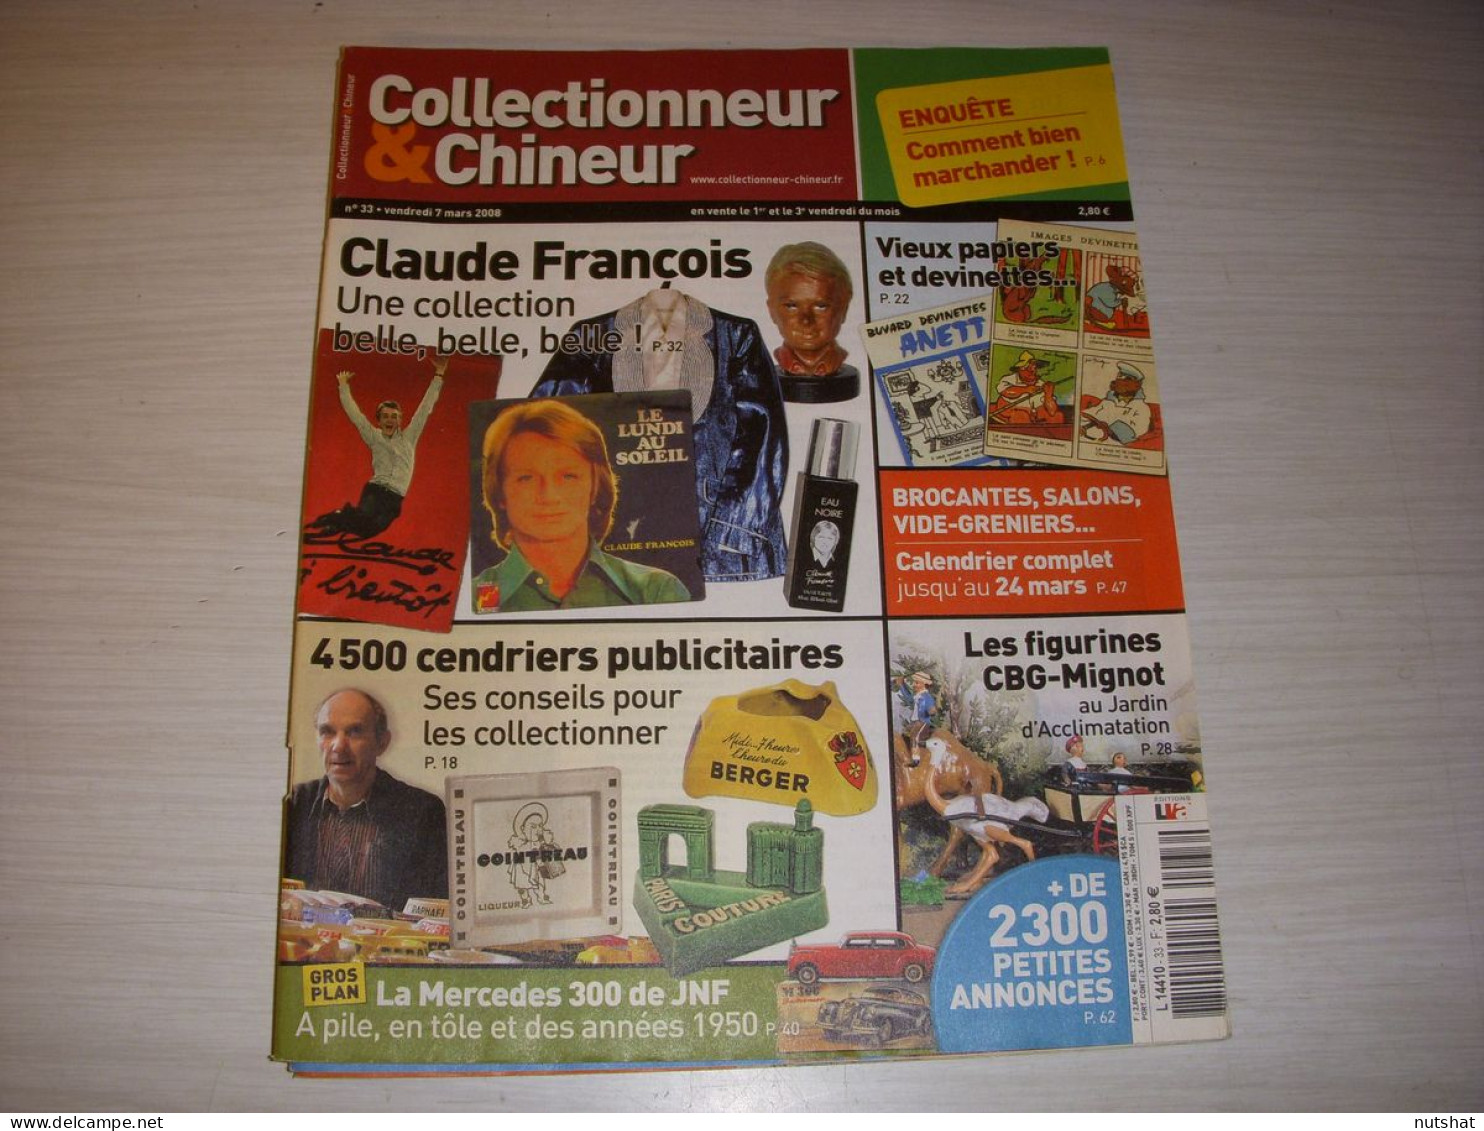 COLLECTIONNEUR CHINEUR 033 07.03.2008 CLAUDE FRANCOIS CENDRIERS PAPIER DEVINETTE - Verzamelaars